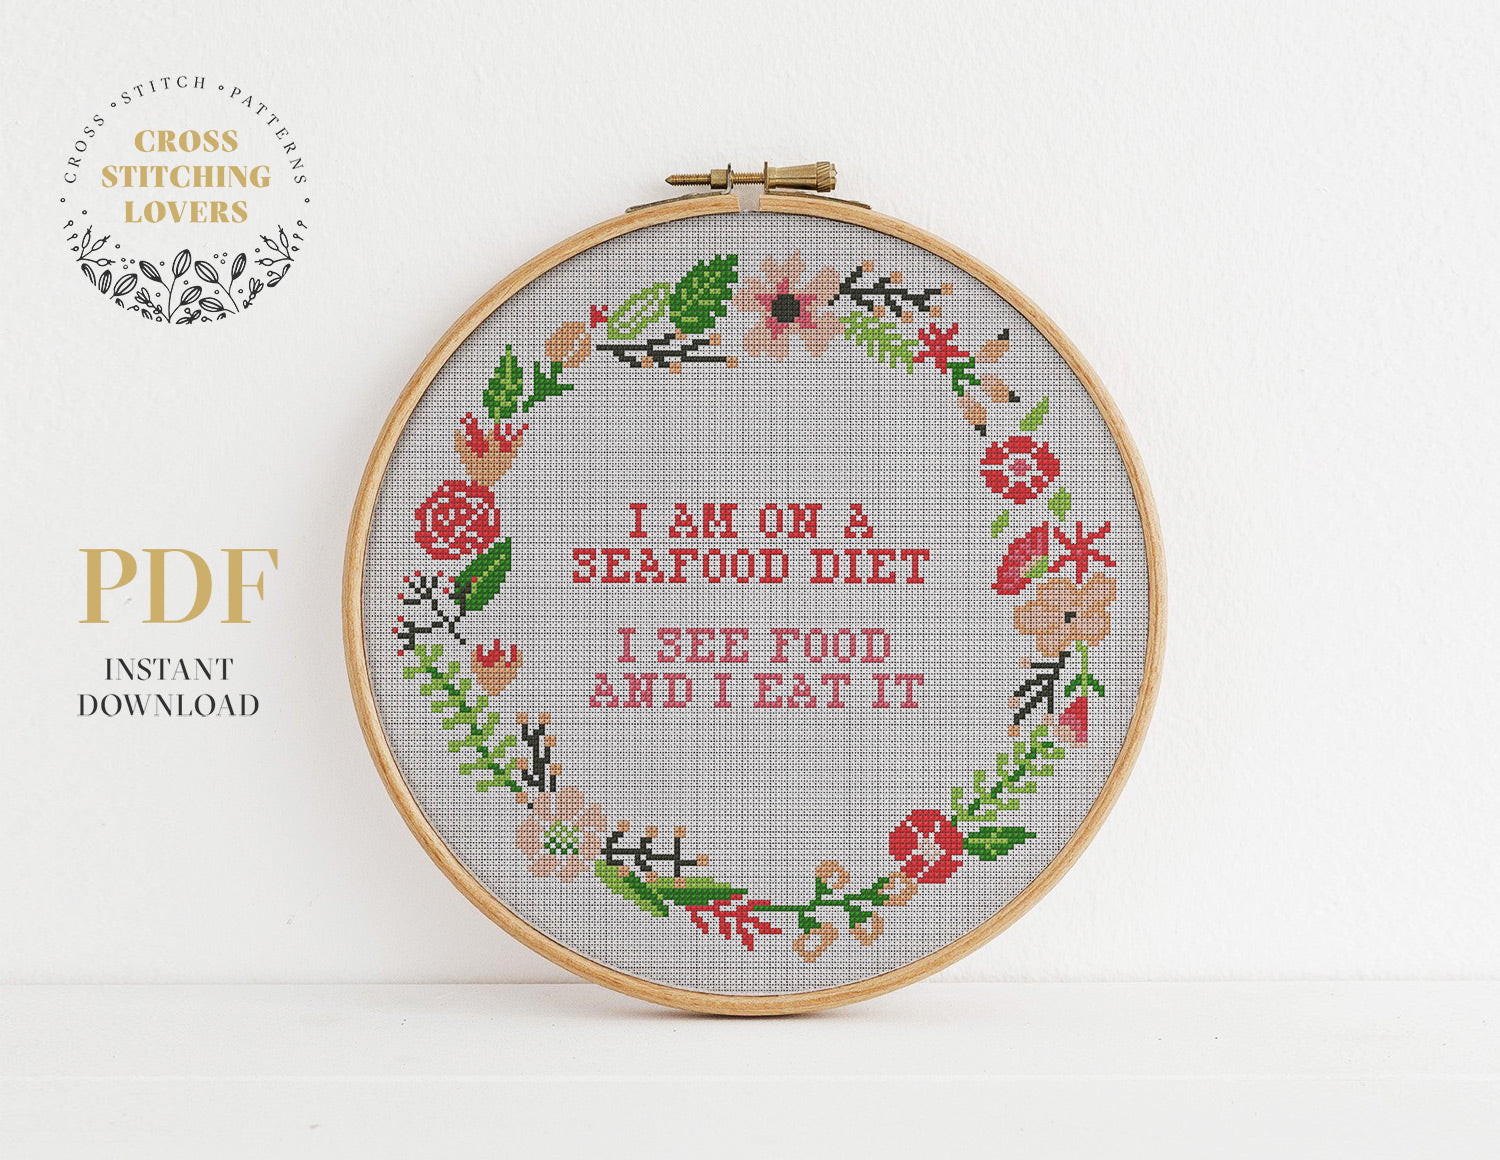 I AM ON A SEAFOOD DIET I SEE FOOD AND I EAT IT - Cross stitch pattern